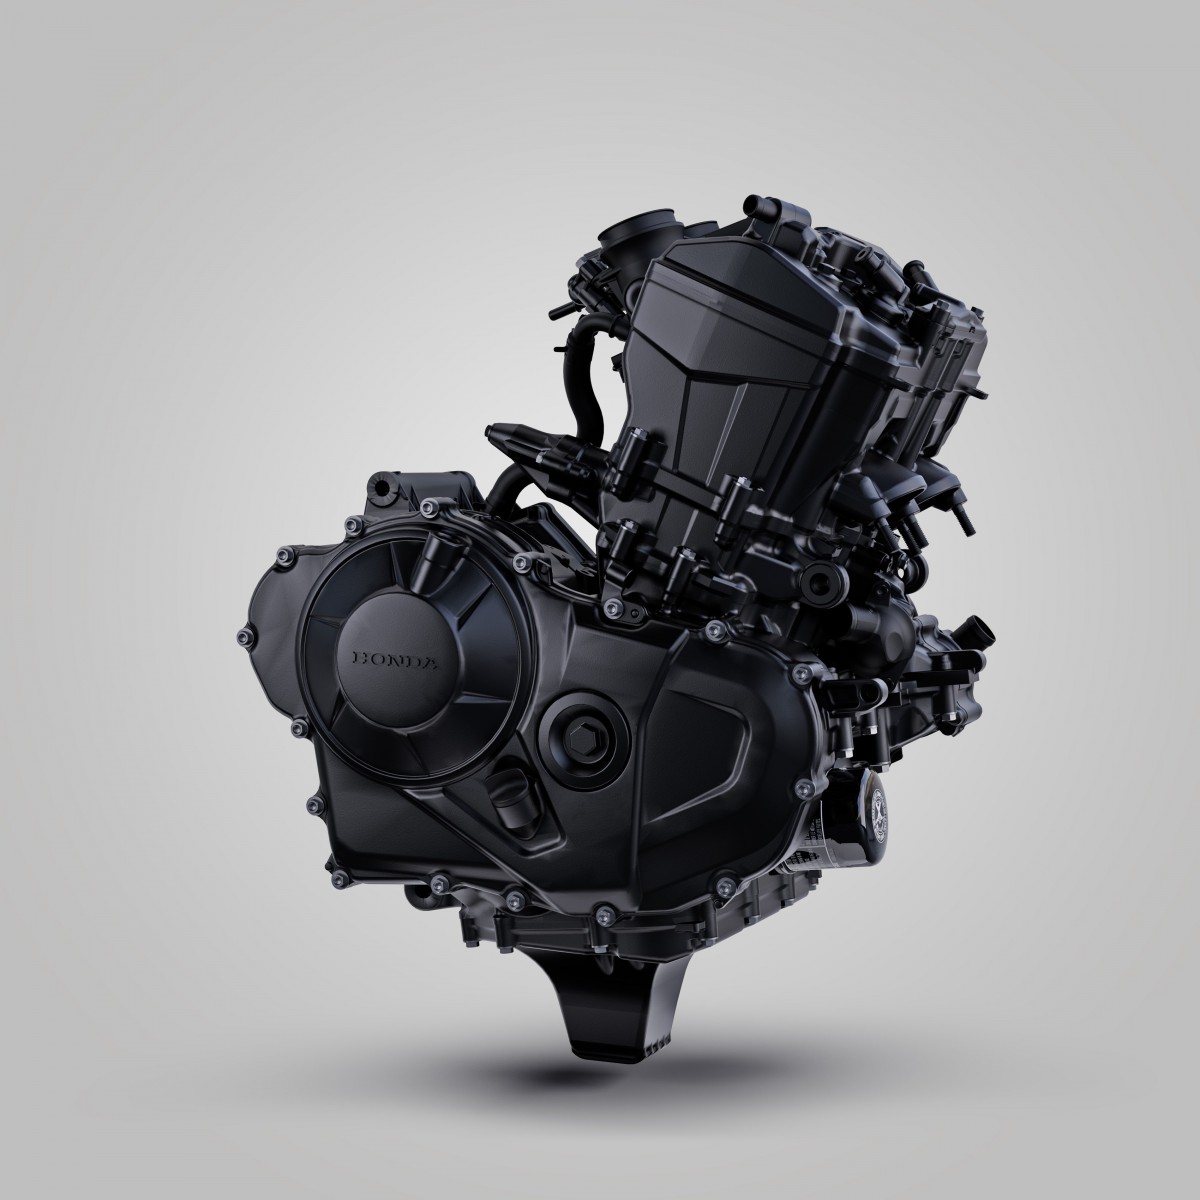 Новая платформа Honda CB750 (2023) - 755 куб.см., 92 л.с., 75 Нм